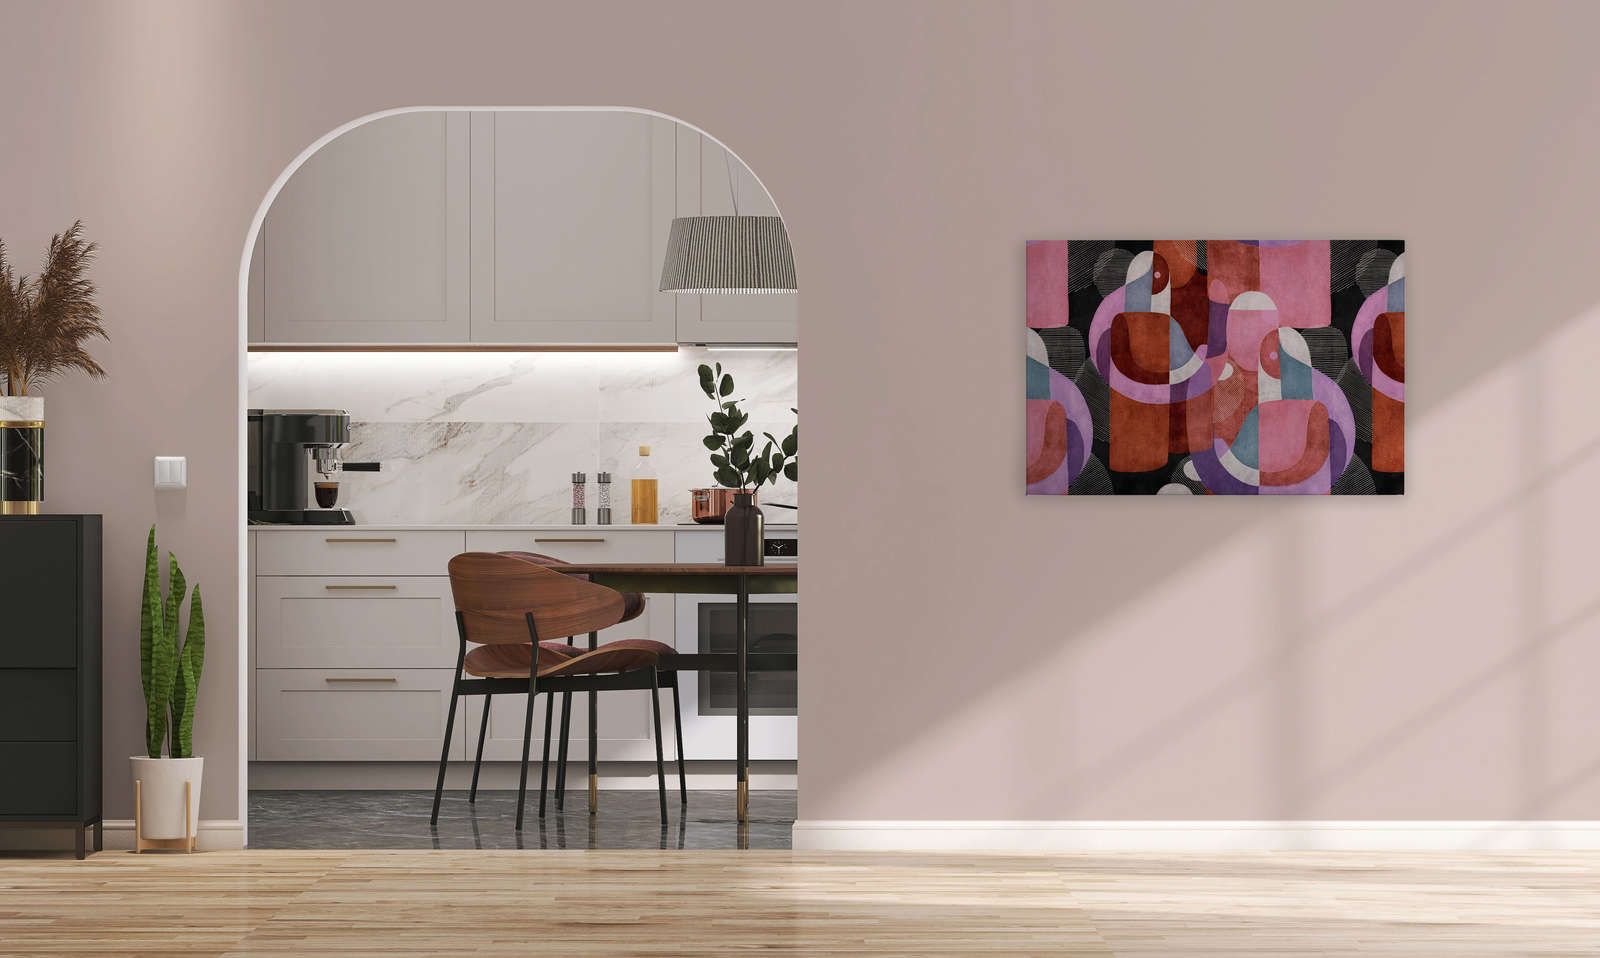             Meeting Place 2 - toile design abstrait ethnique noir & rose - 0,90 m x 0,60 m
        